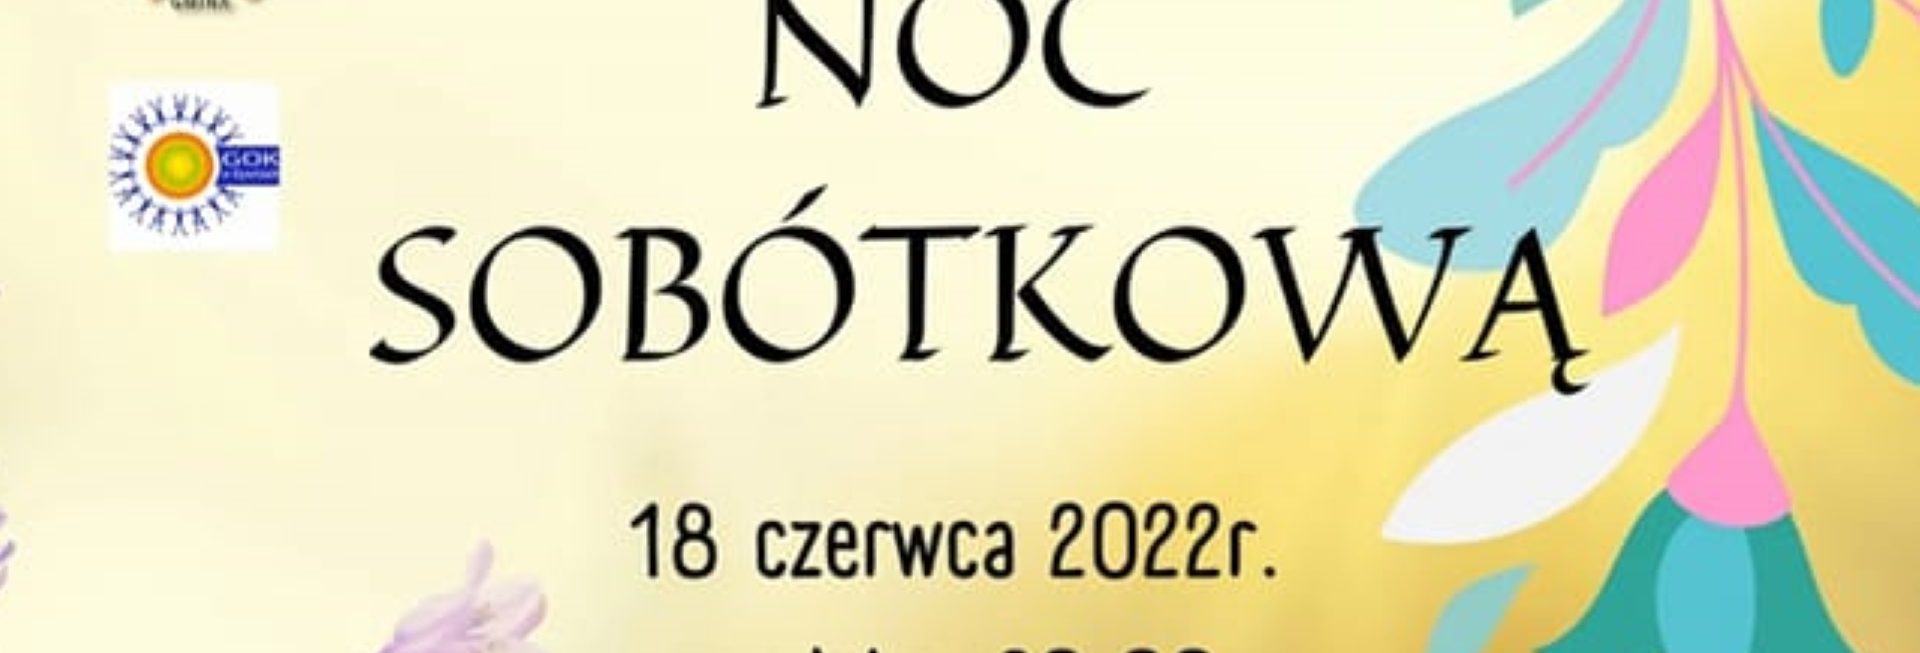 Plakat graficzny zapraszający do miejscowości Frączki w gminie Dywit na Noc Sobótkową we Frączkach 2022.